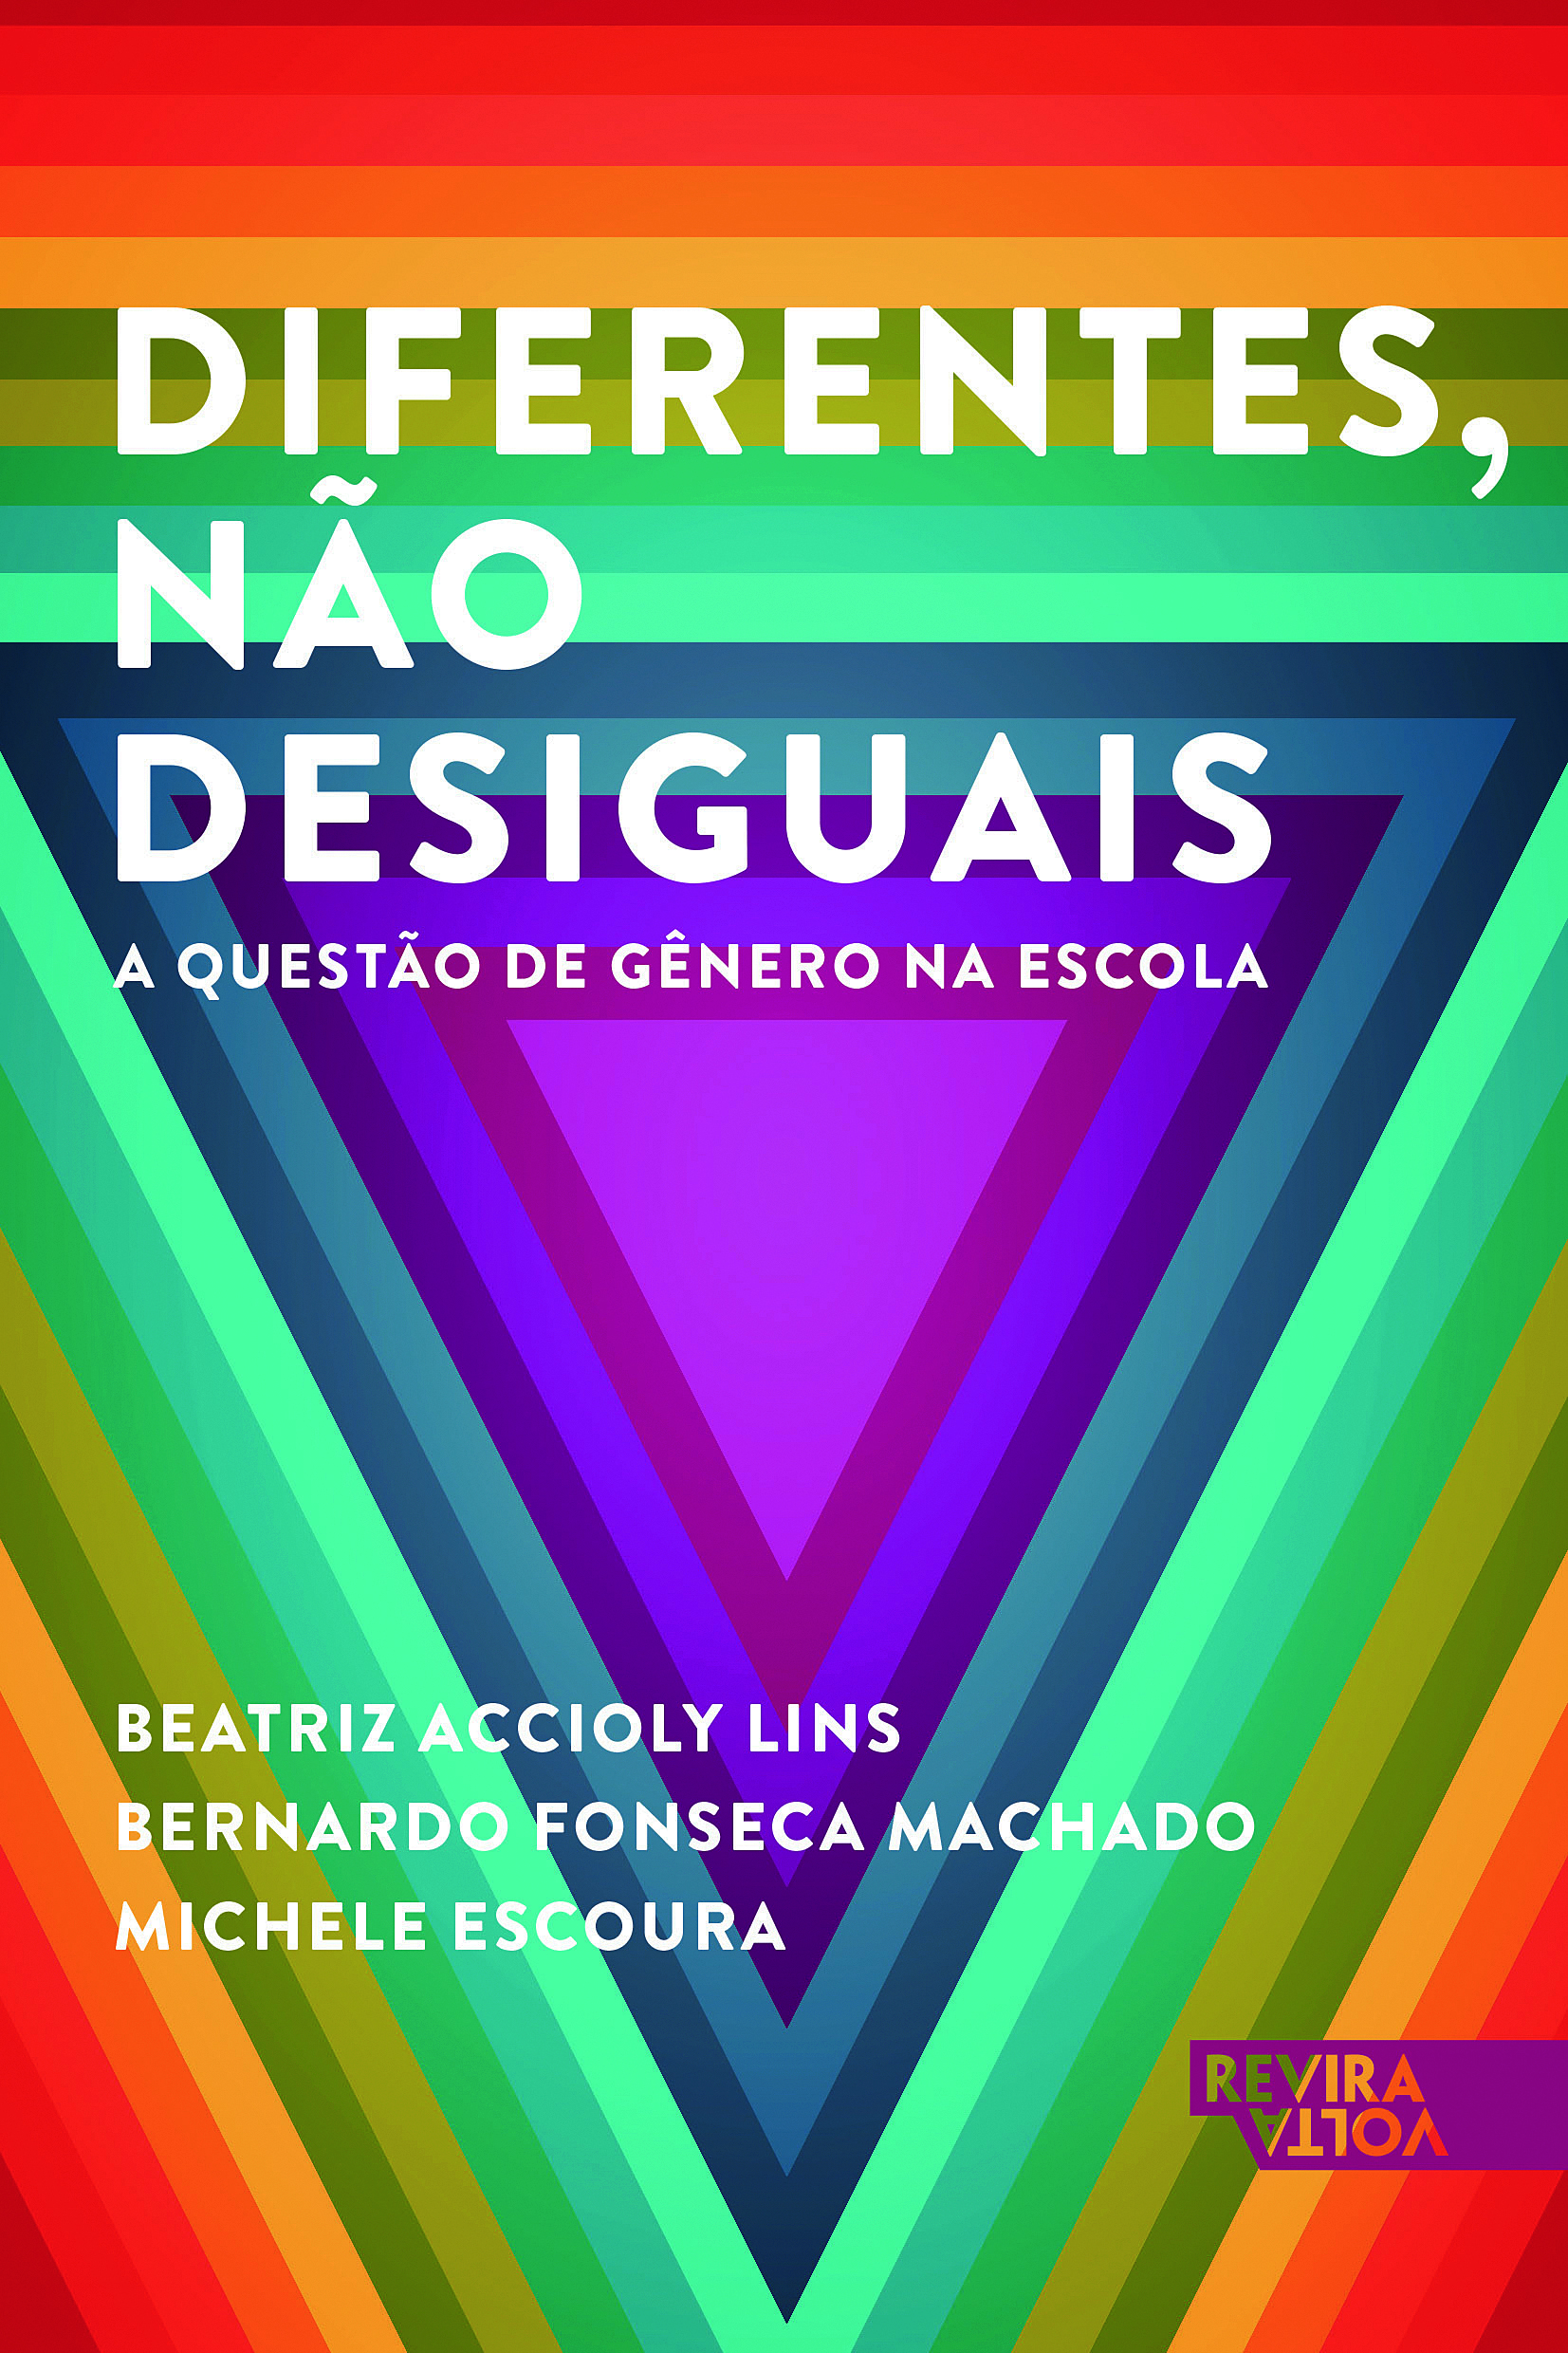 Diferentes, não desiguais – a questão de gênero na escola, de Beatriz Accioly Lins, Bernardo Fonseca Machado e Michele Escoura 